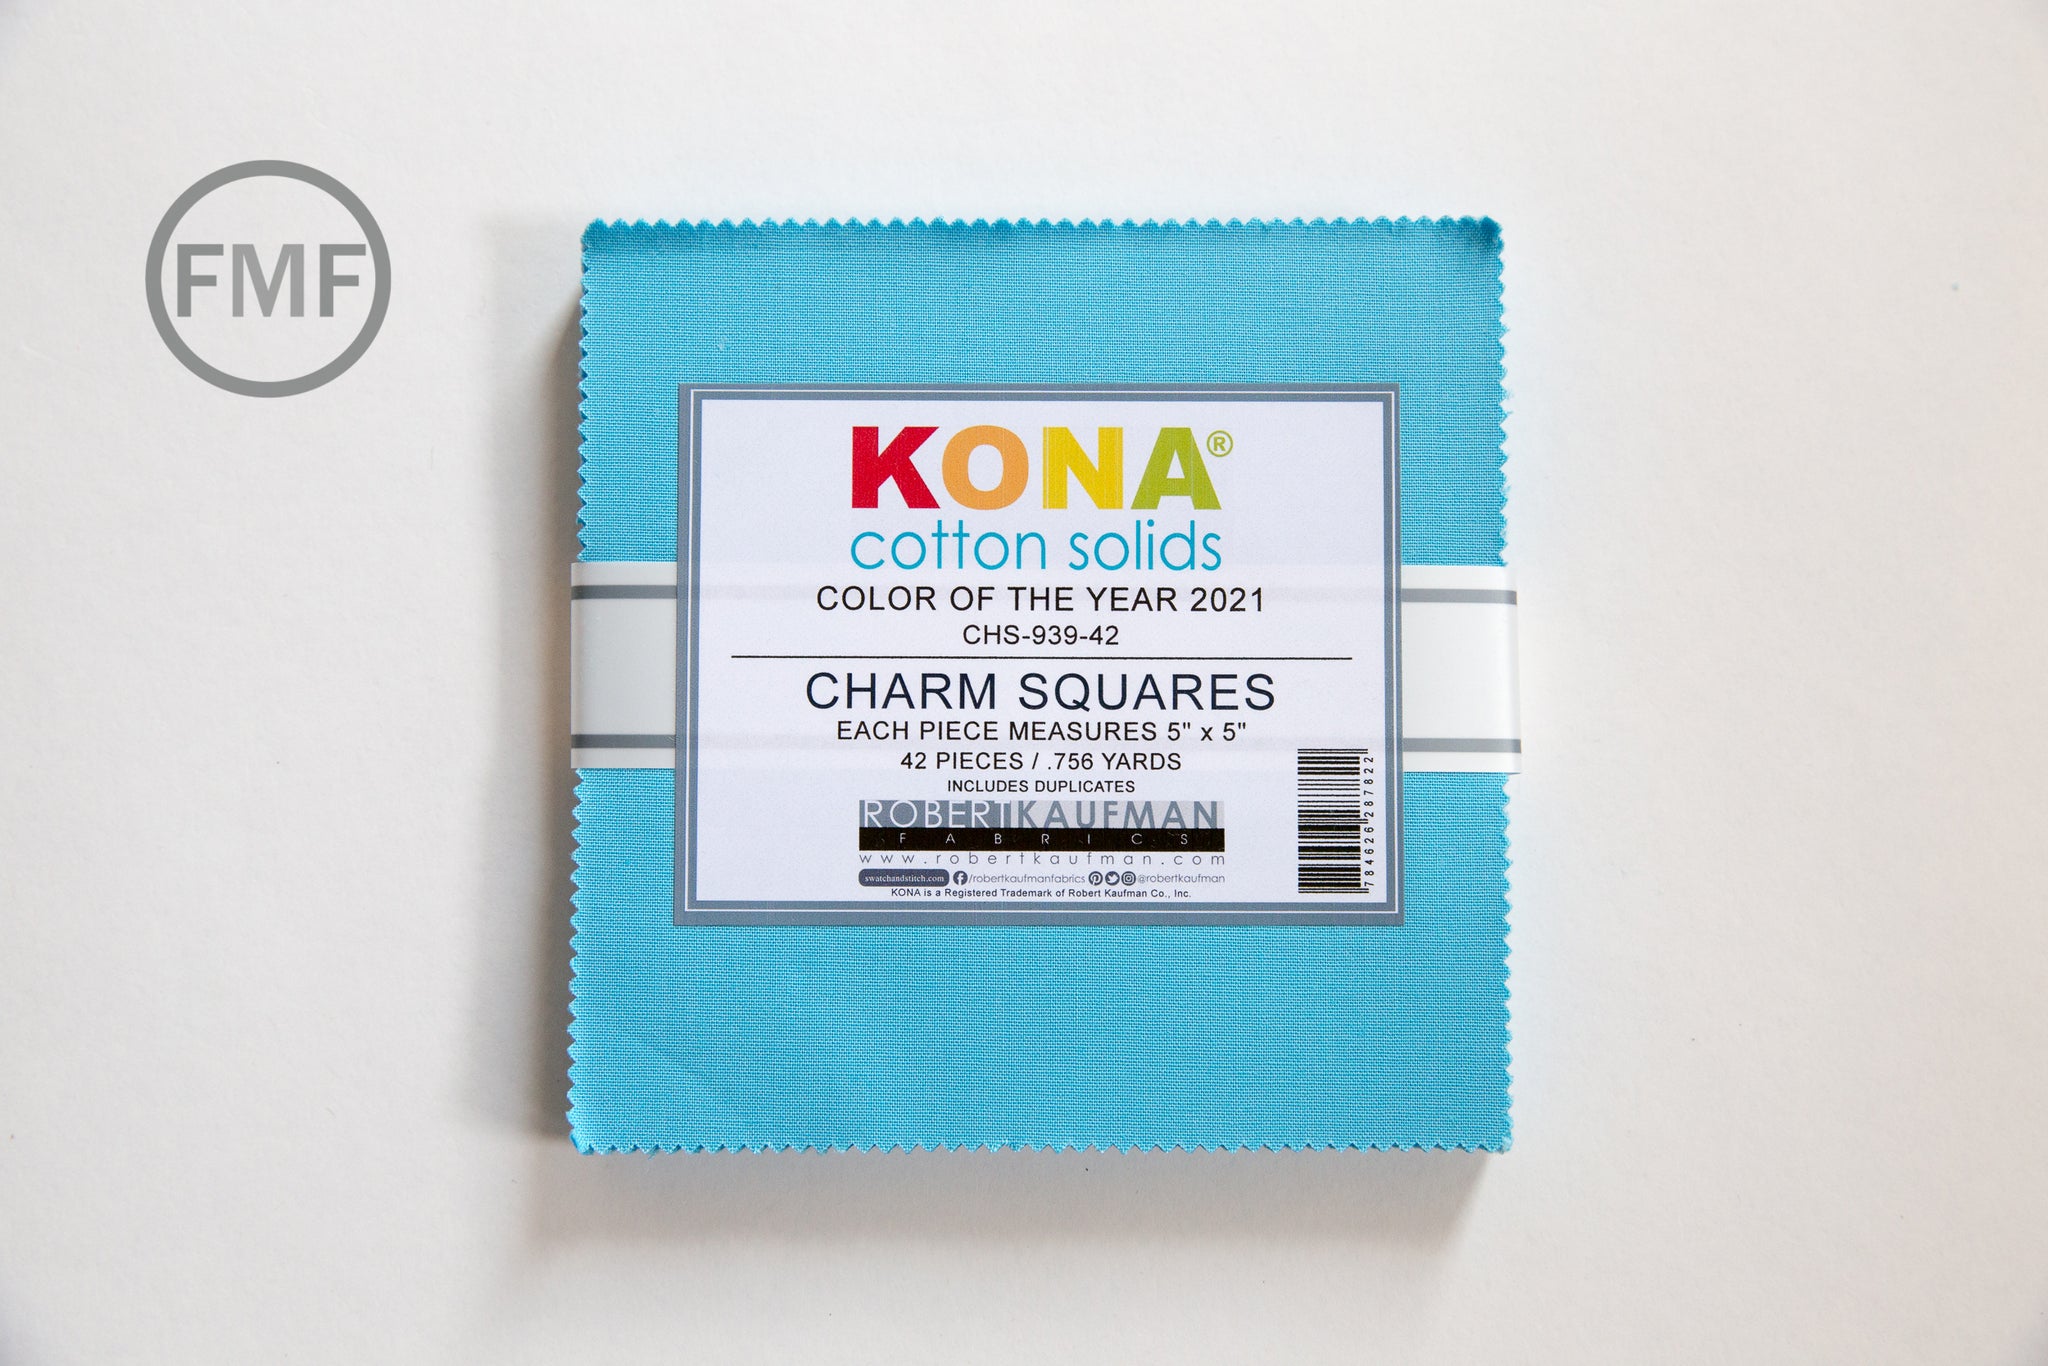 Green Cyan 9 Fat Quarter Bundle - Kona Cotton